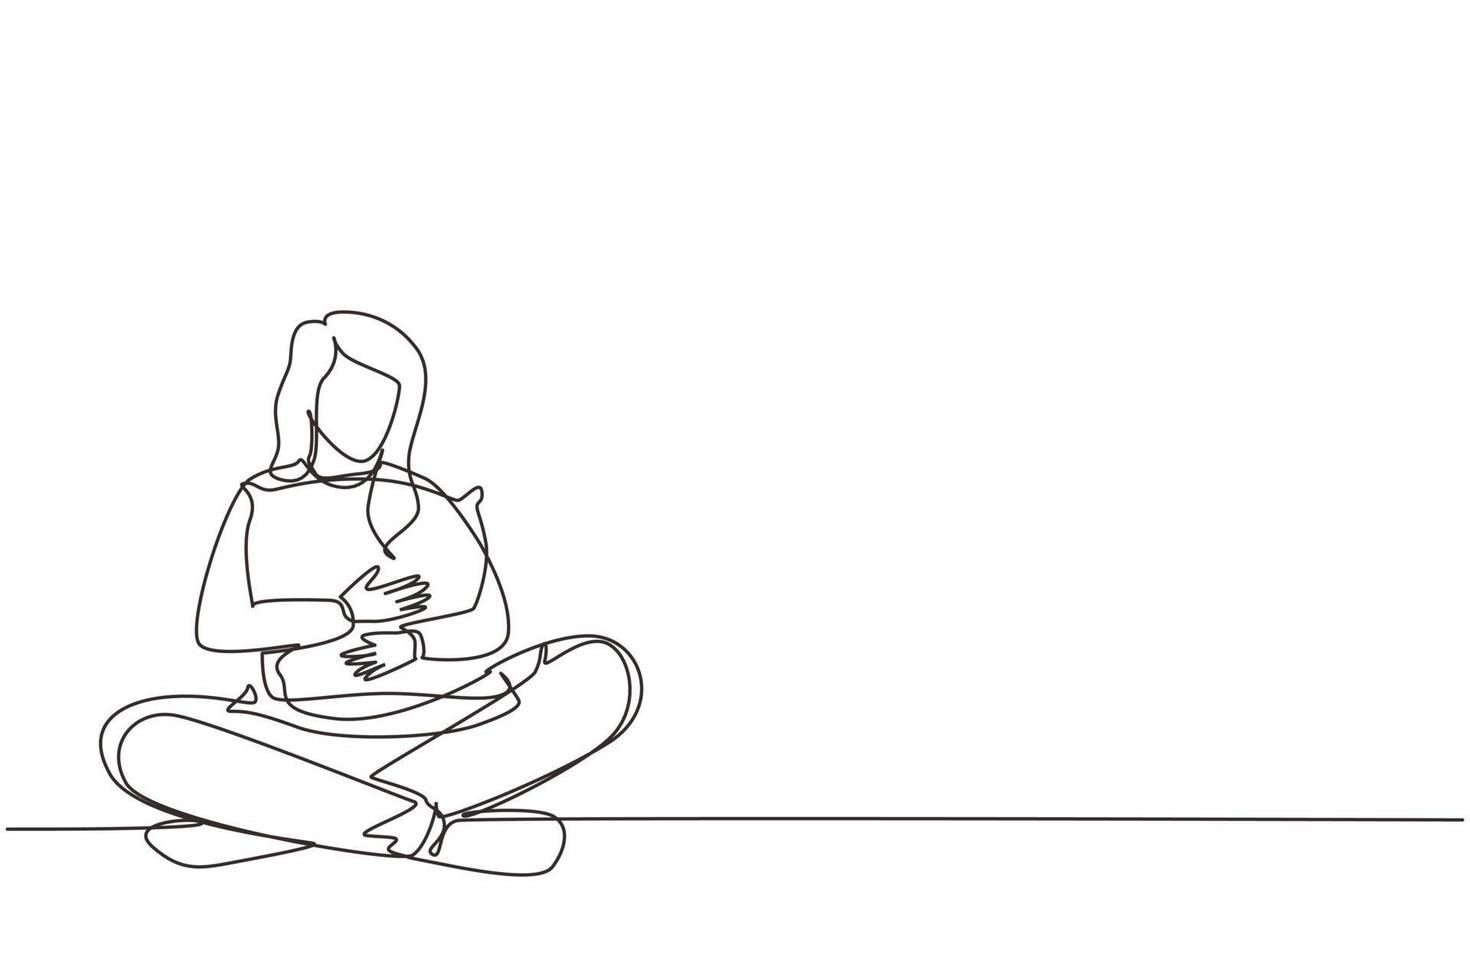 einzelne eine Linie, die hübsches Mädchen zeichnet, das Kissen sitzt und umarmt. junge frau sitzt mit geschlossenen augen und will ins bett gehen. Entspannung und Zeit zum Schlafen. Design-Grafikvektor mit kontinuierlicher Linie vektor